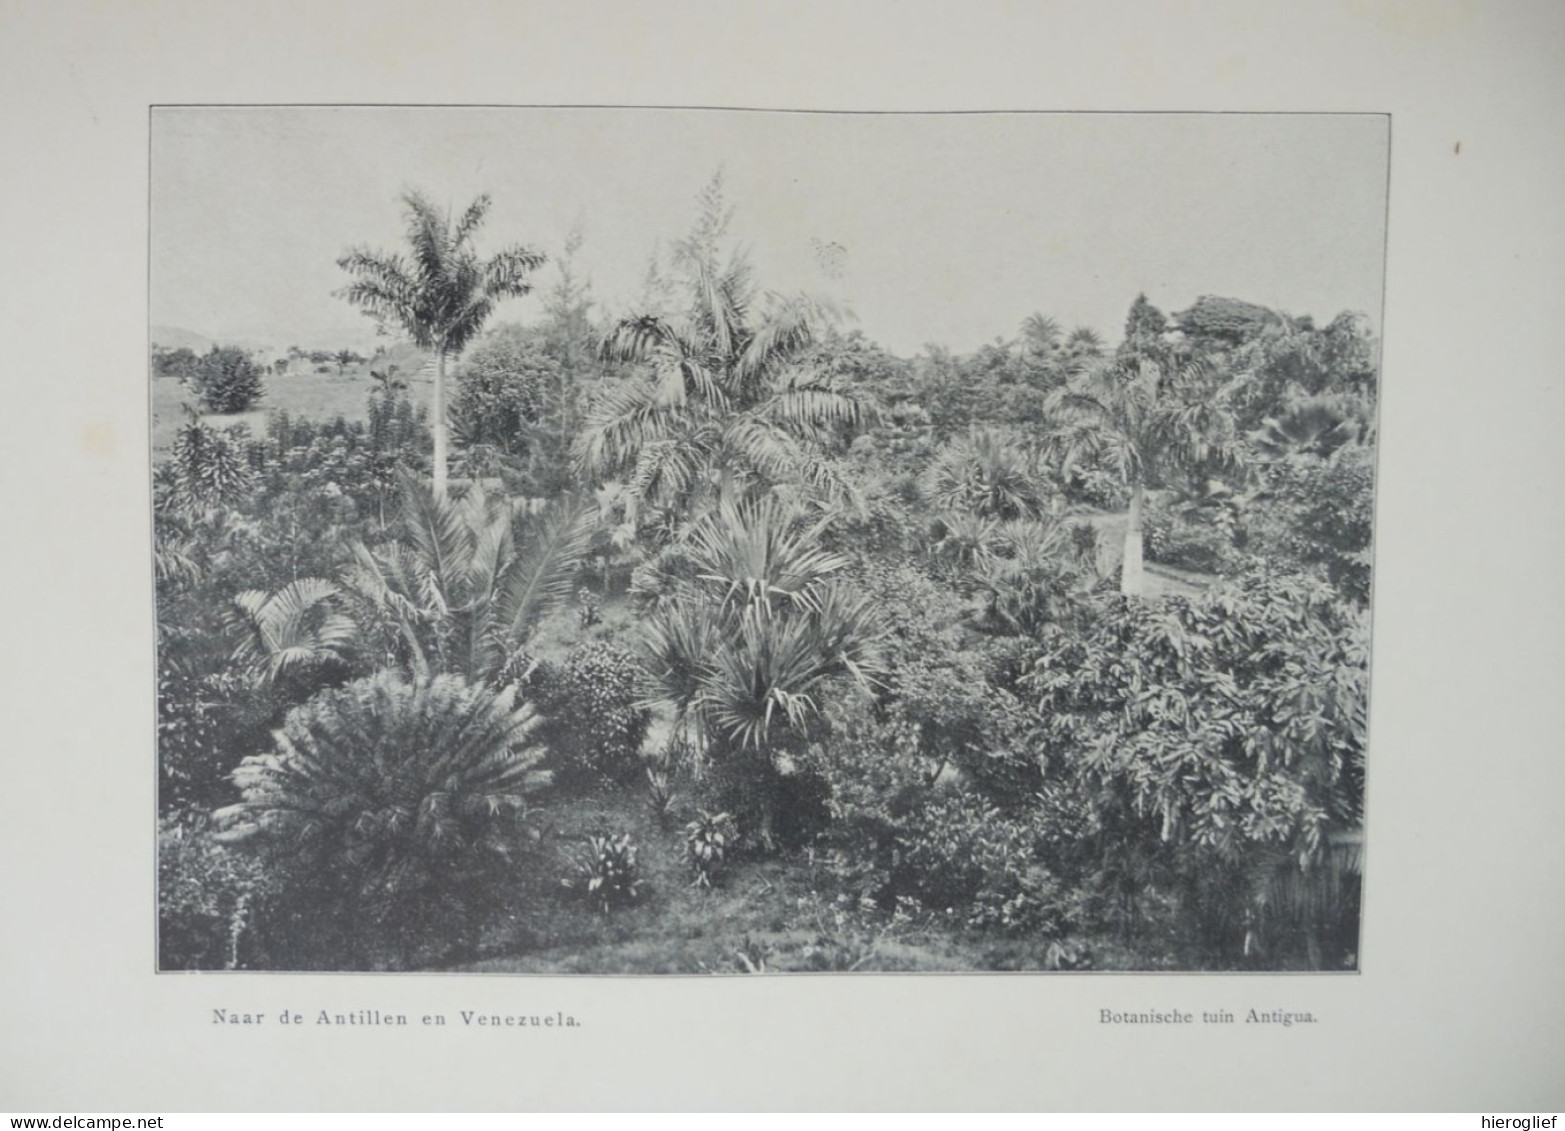 Naar de ANTILLEN en VENEZUELA door H. Van Kol 1904 Leiden Sijthof eilanden Dominica revolutie wouden negerras Nederland